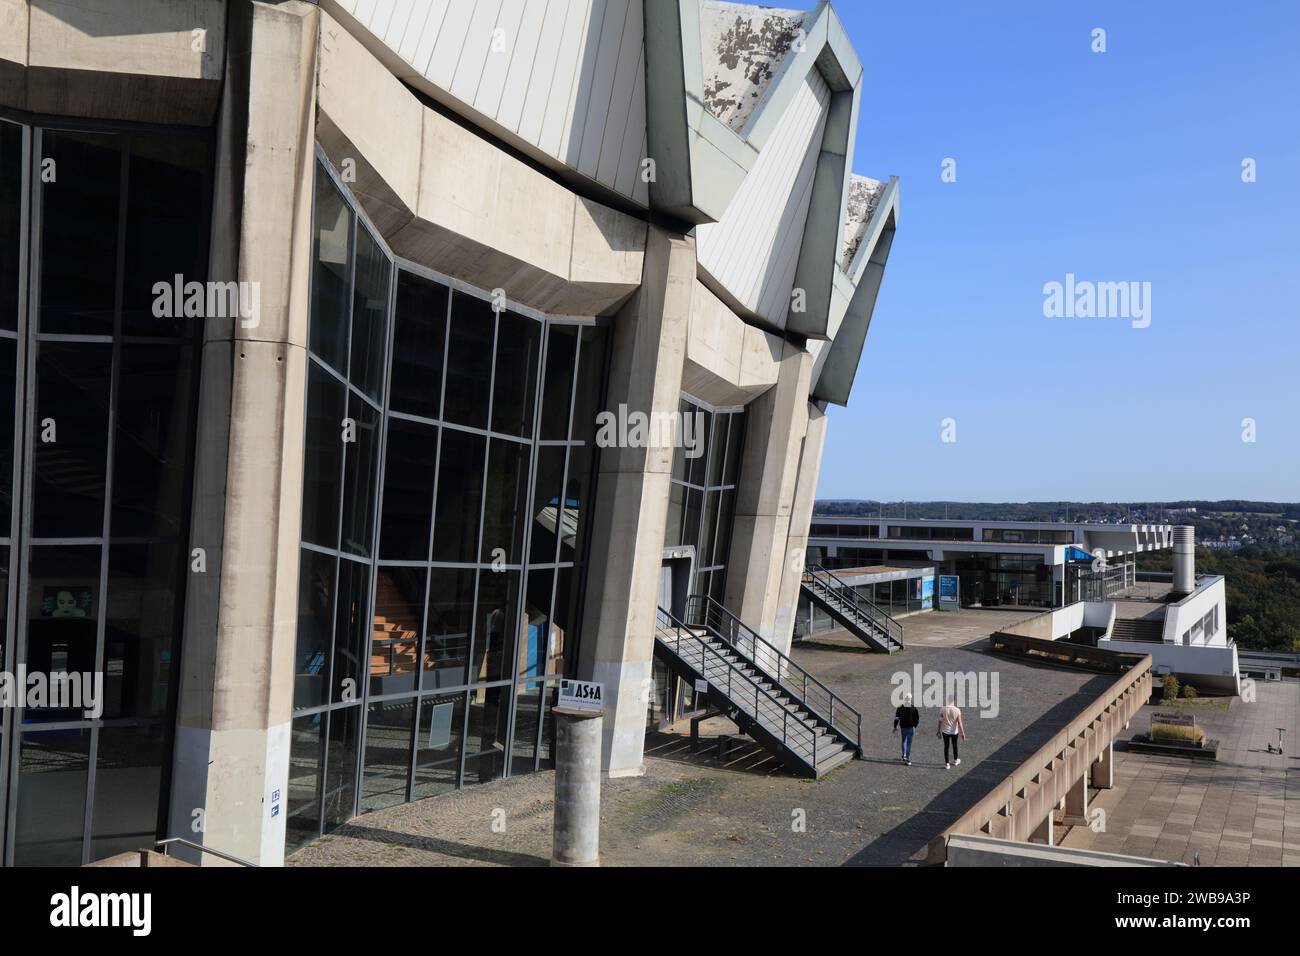 BOCHUM - 17. SEPTEMBER 2020: Menschen gehen am Audimax-Gebäude der Ruhr-Universität Bochum vorbei. Mit 42.425 Schülern ist es die achtgrößte universi Stockfoto